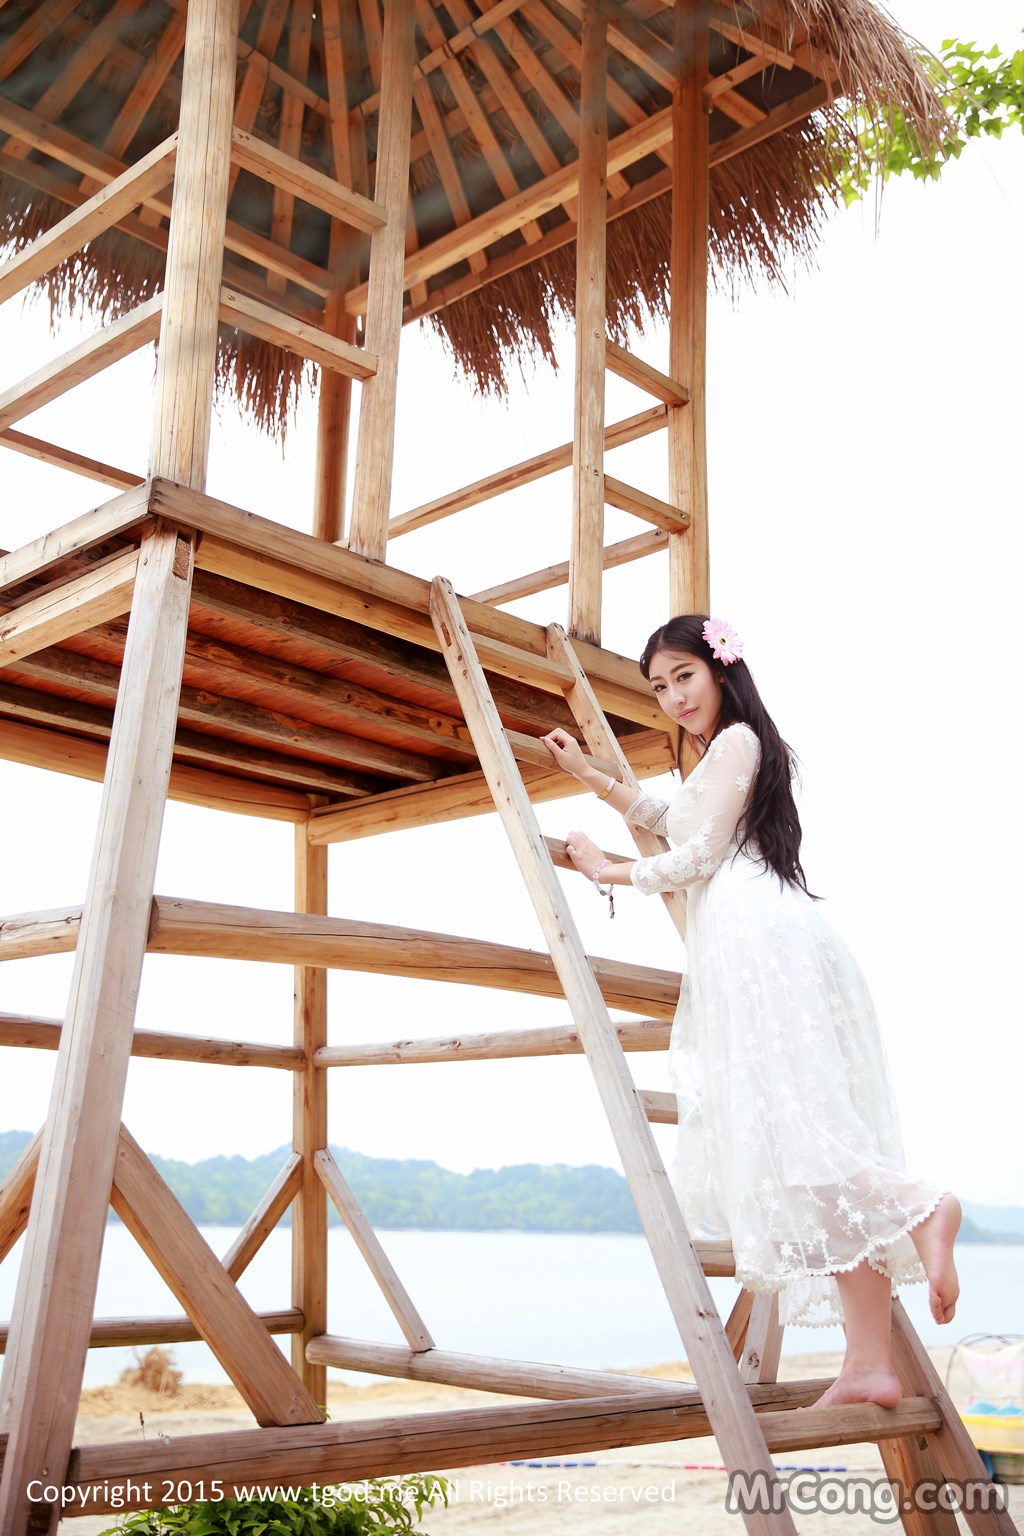 TGOD 2015-05-08: Models Lu Si Yu (鲁思羽) and Xia Jing (夏 静) (50 photos)